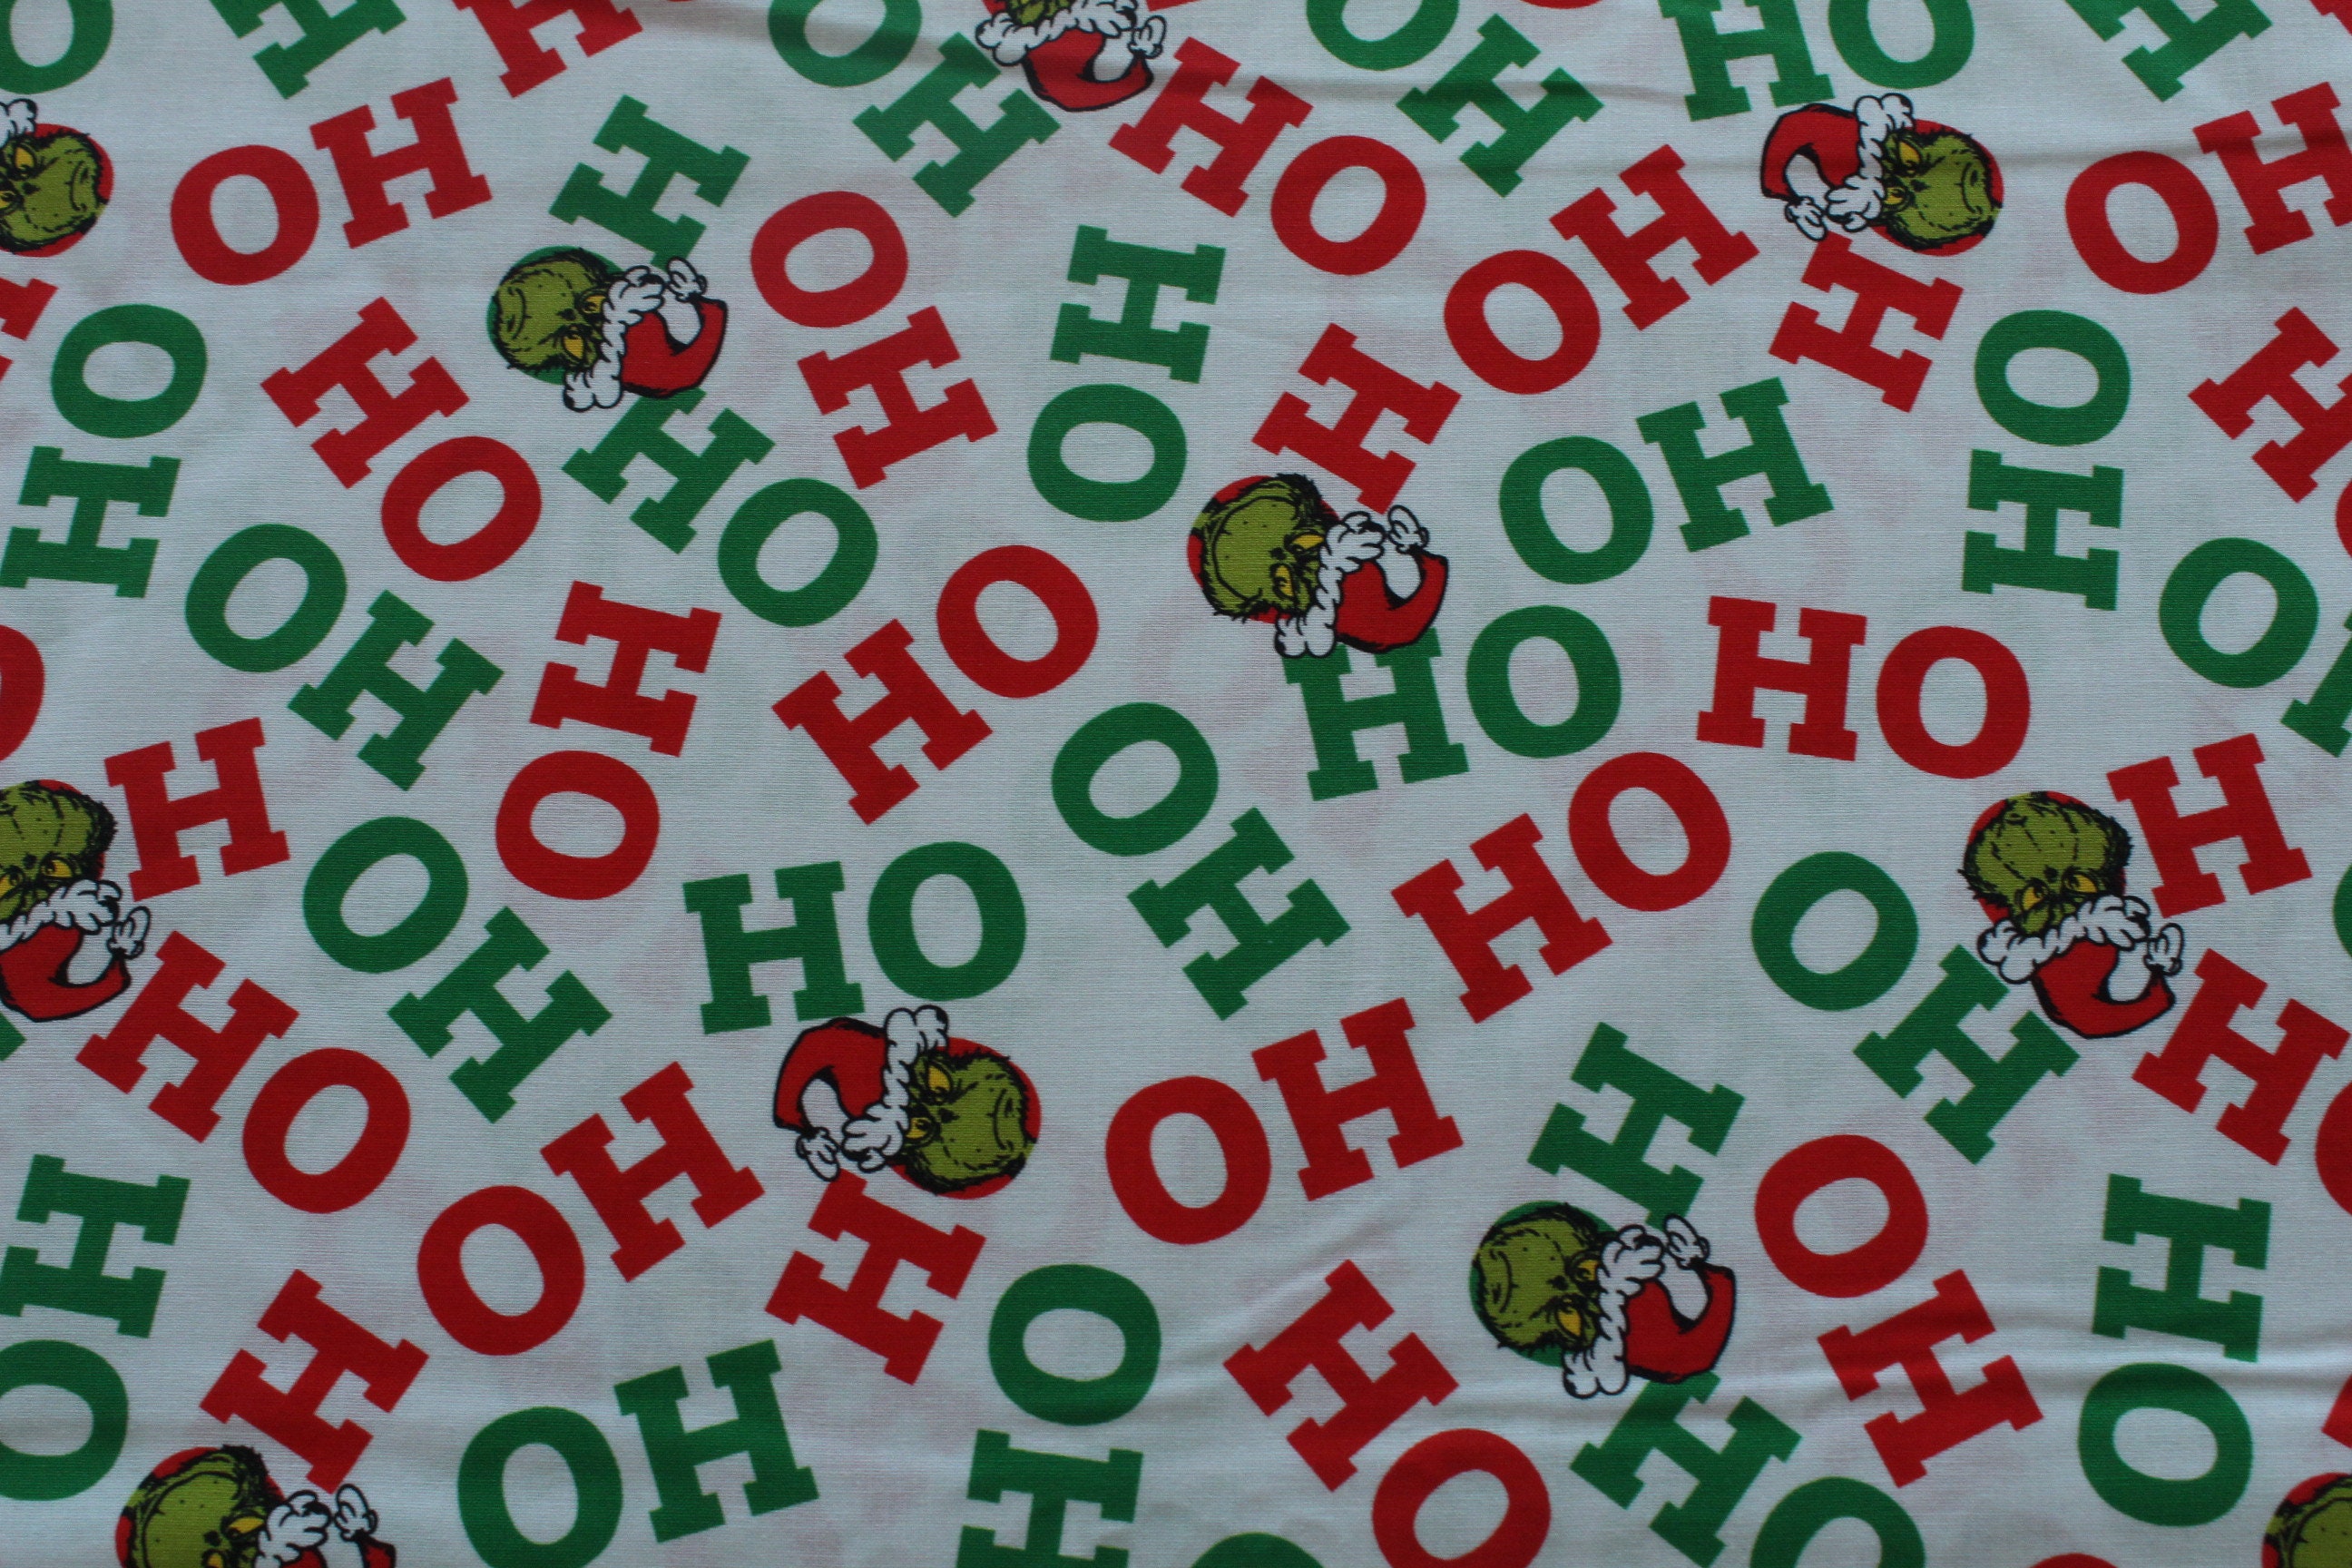 Grinch HO HO HO Panel - How The Grinch Stole Christmas - 784626557413